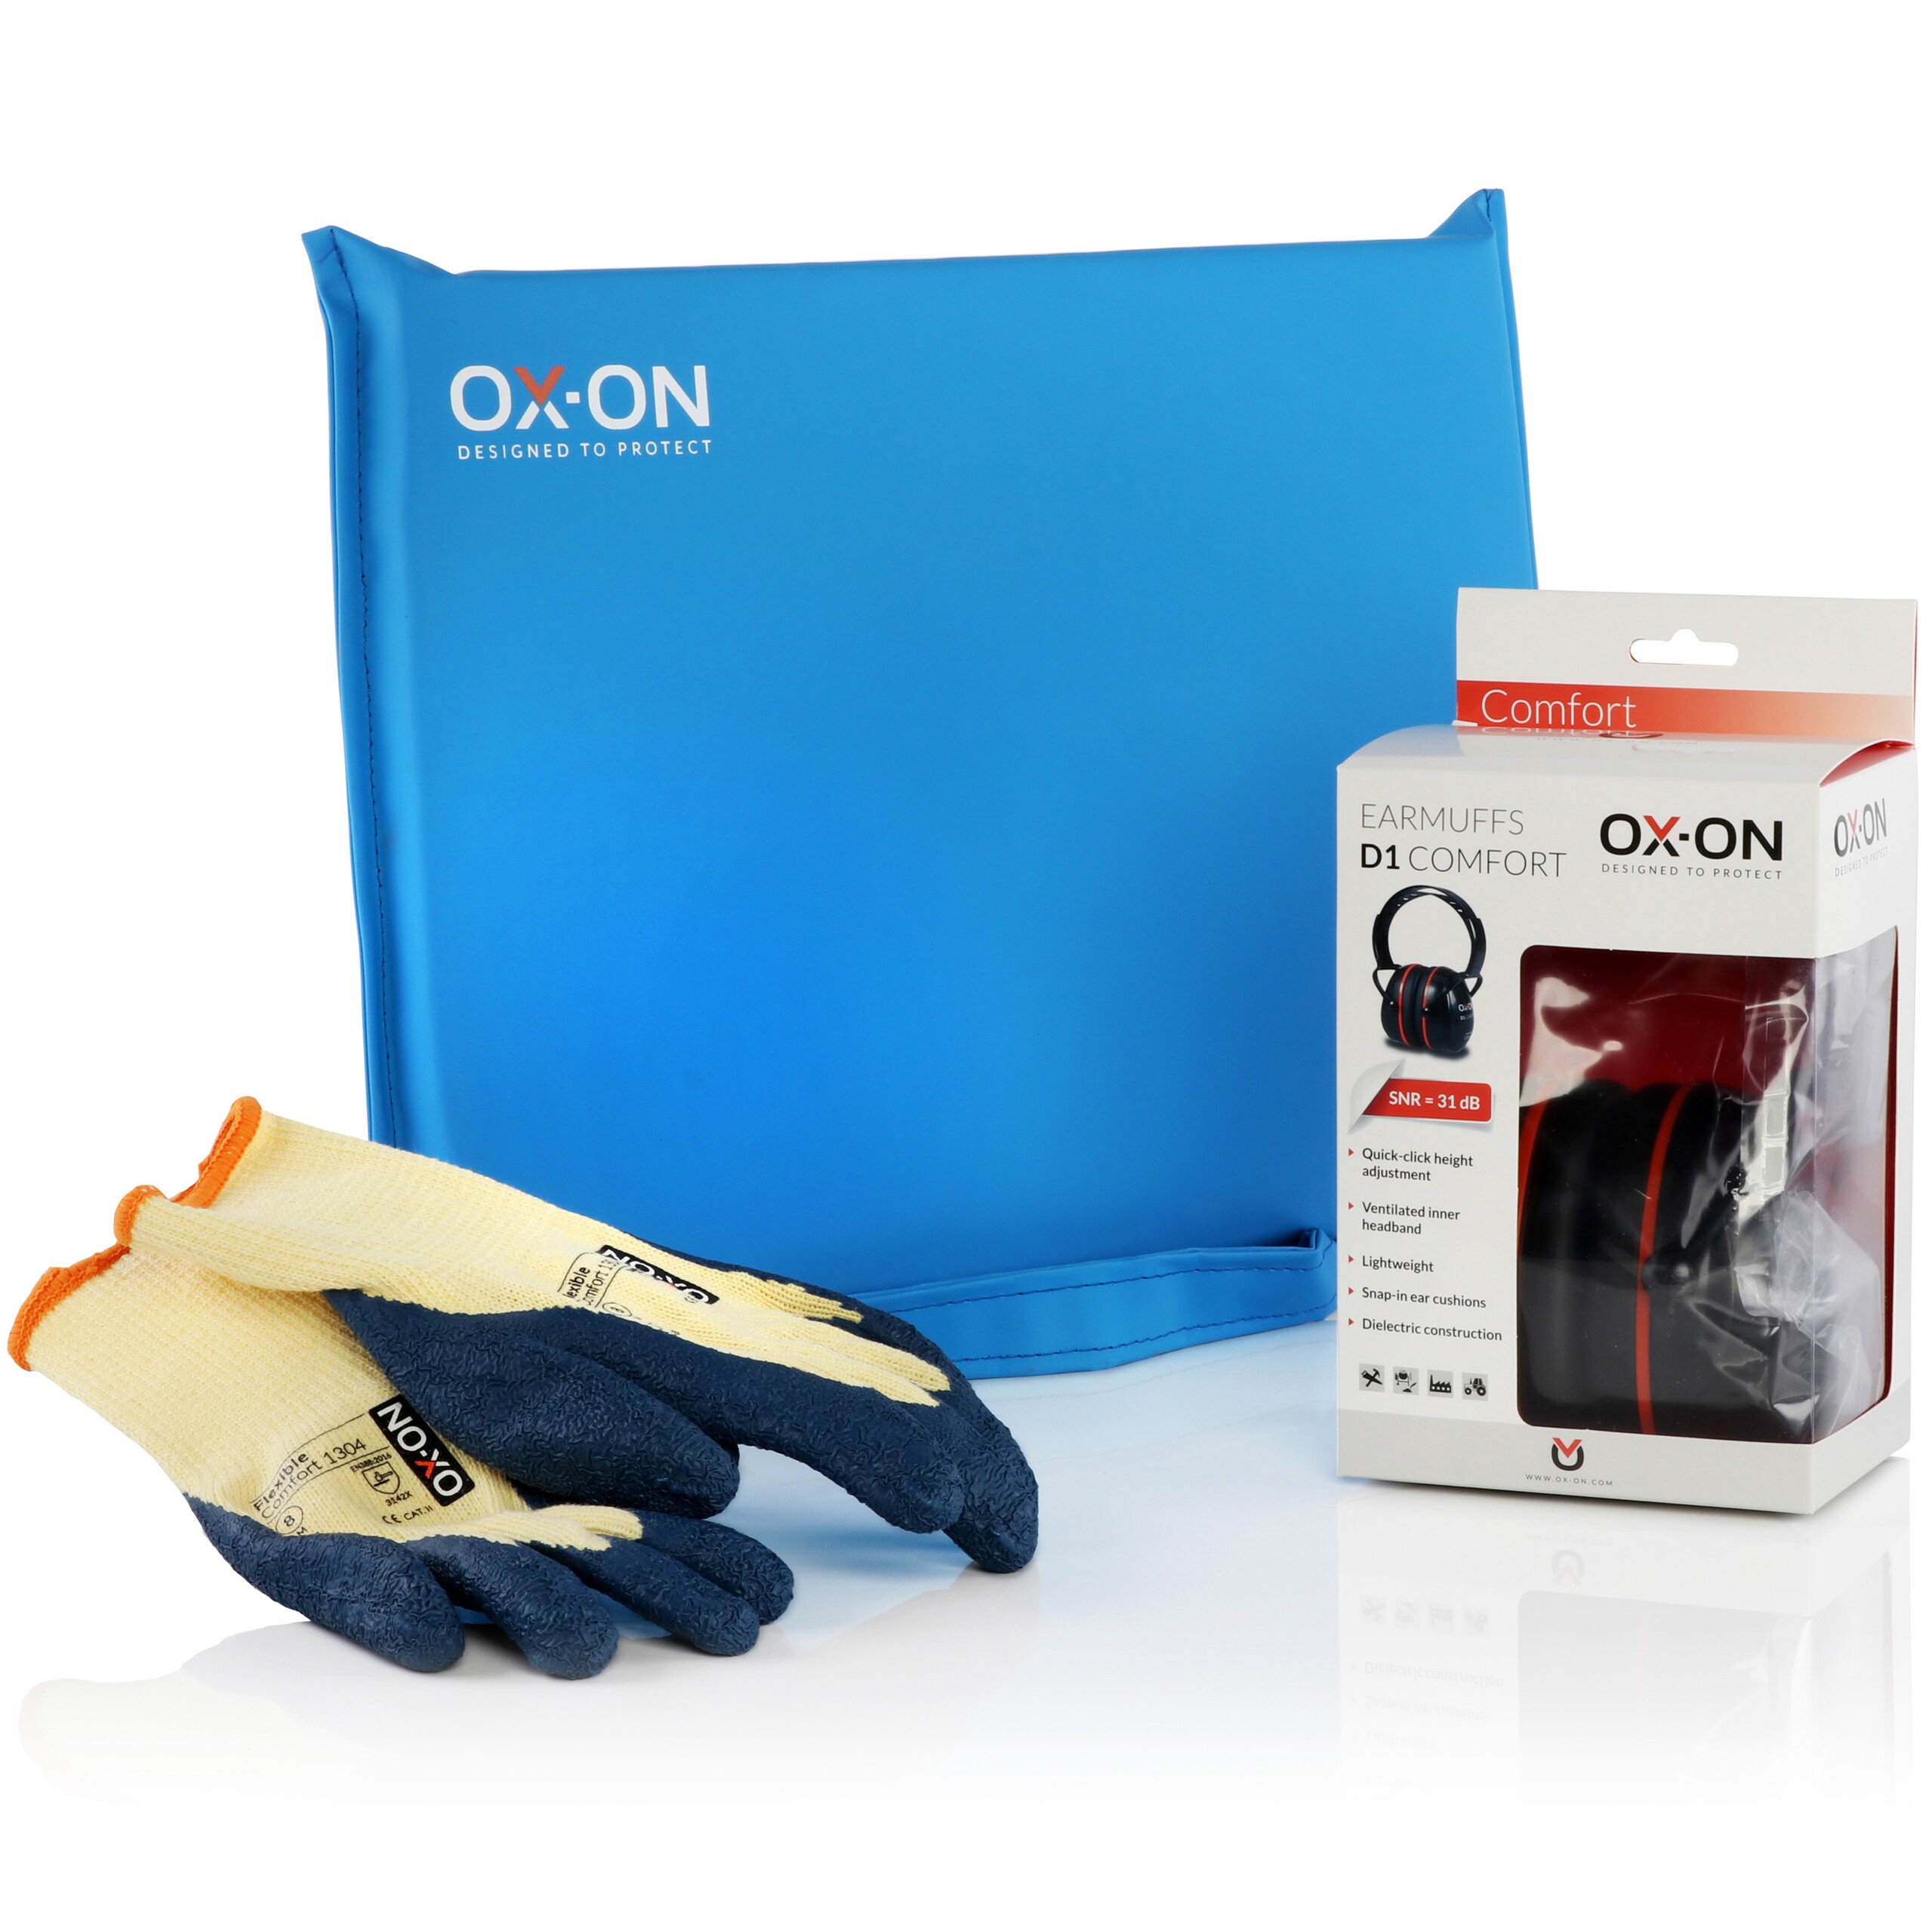 Arbeitshandschuhe, Knie- und Gehörschutz der Marke OX-ON